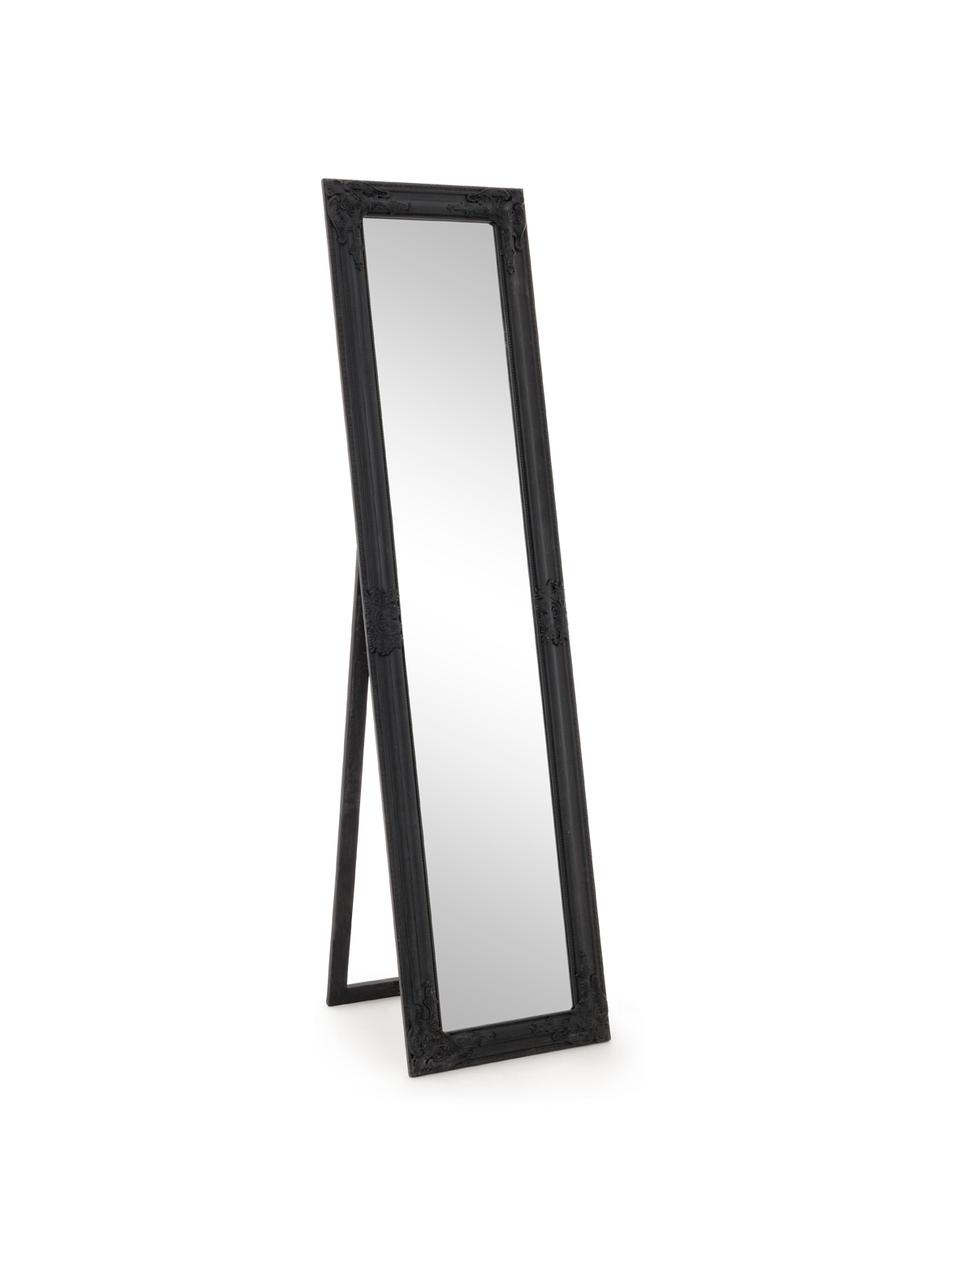 Eckiger Standspiegel Miro mit schwarzem Rahmen, Rahmen: Holz, beschichtet, Spiegelfläche: Spiegelglas, Schwarz, 40 x 160 cm